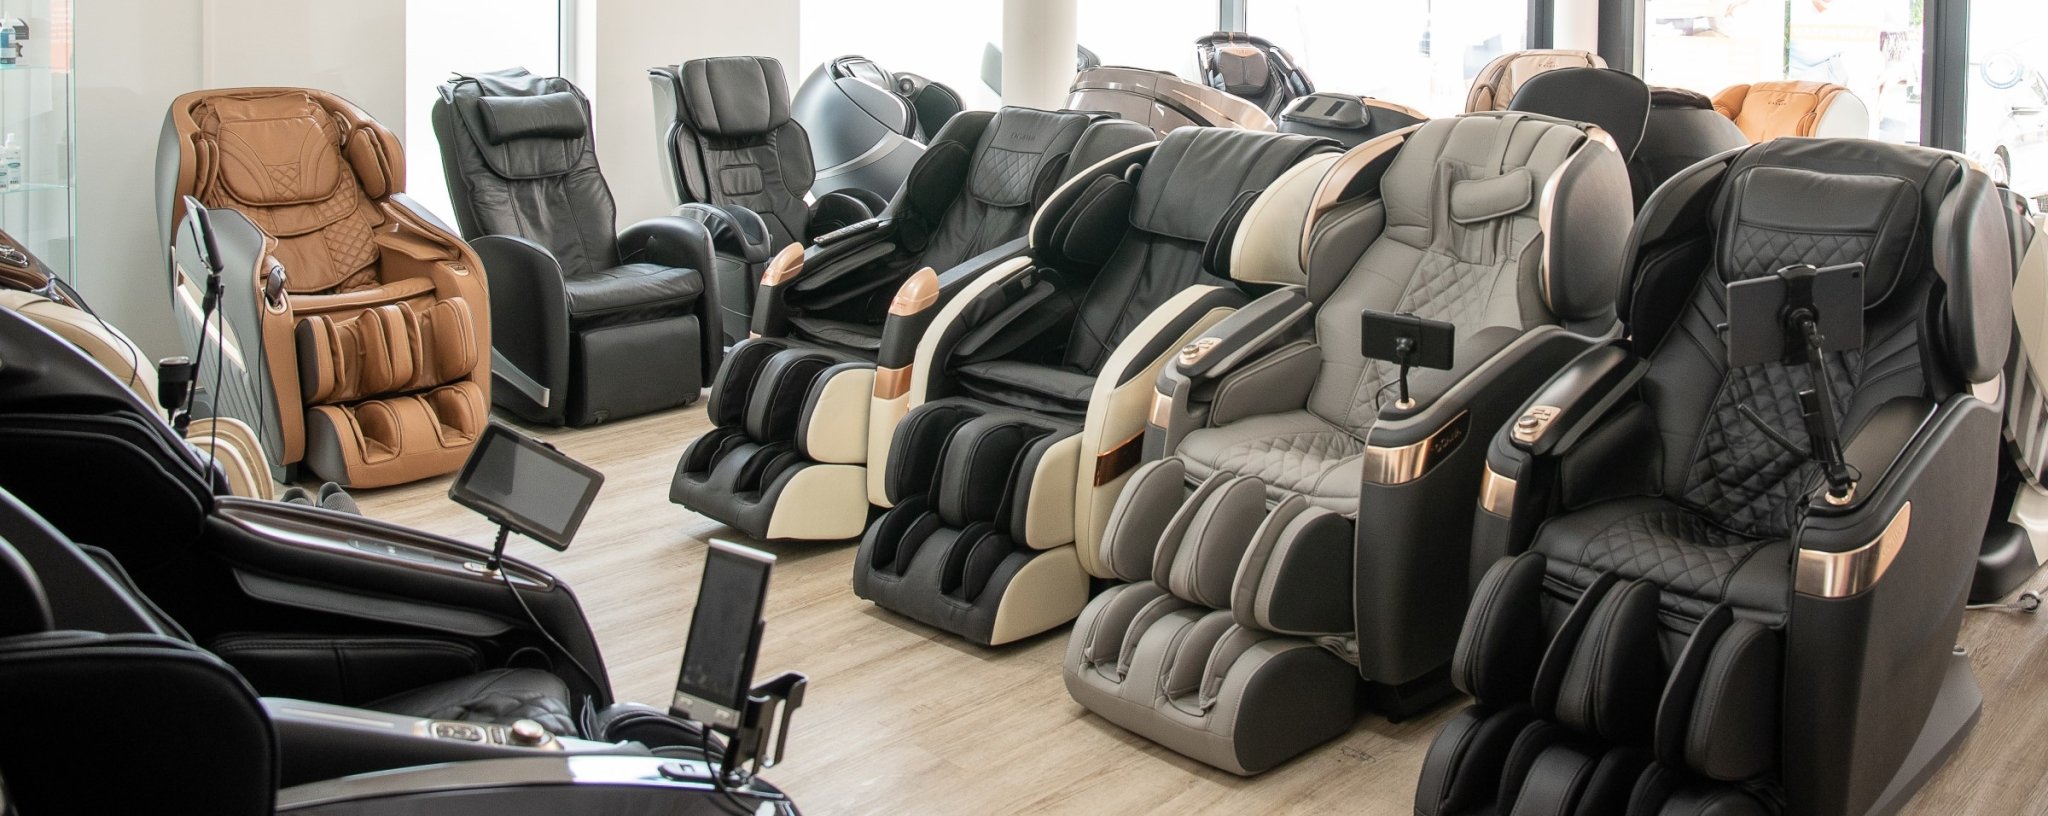 L'Allemagne et la plus grande exposition de fauteuils de massage d'Europe